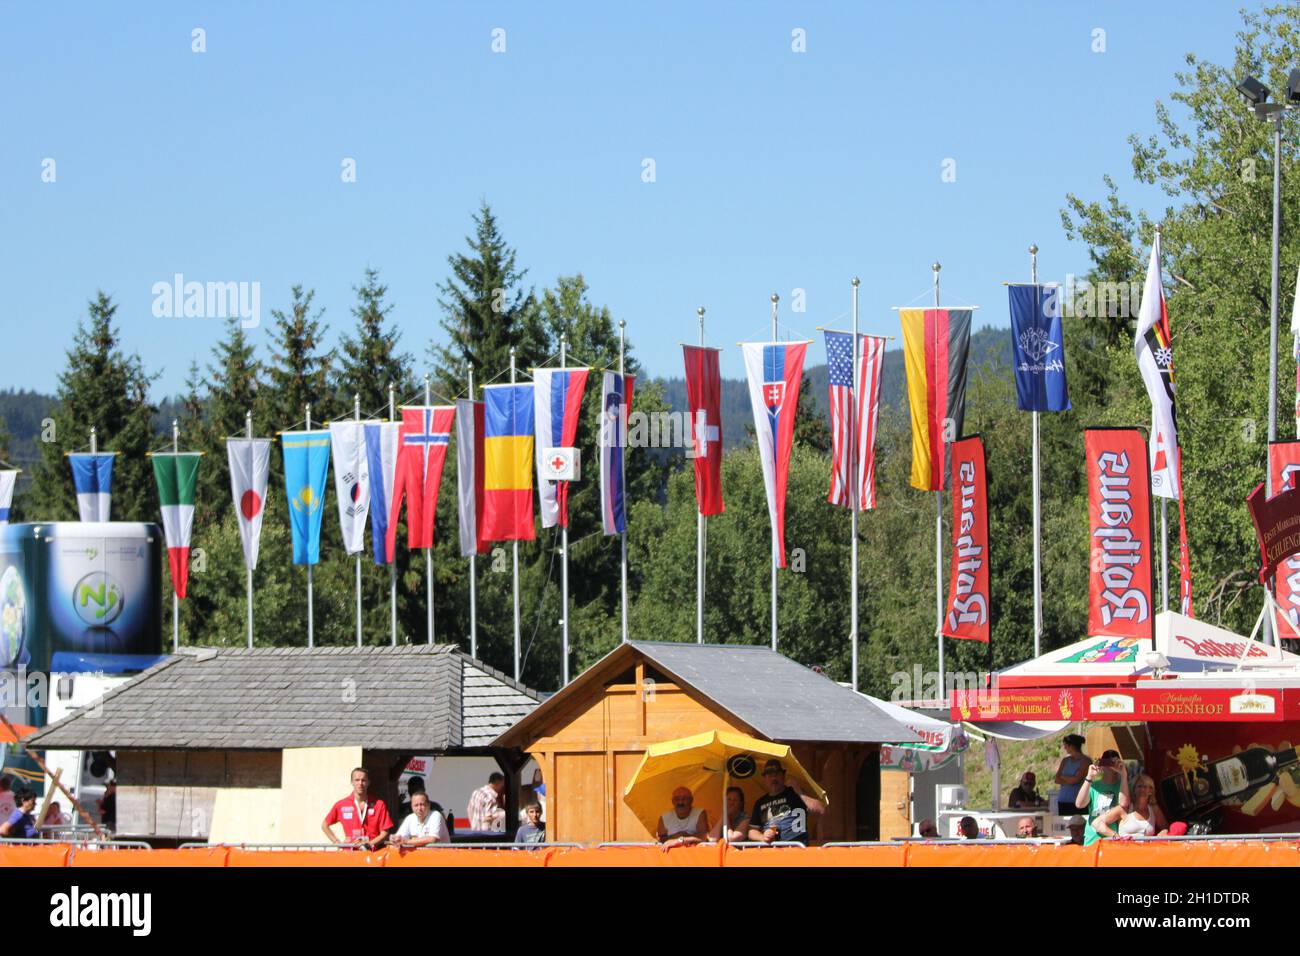 Die Welt zu Gast im Hochschwarzwald. Sommerskispringen in Hinterzarten hat eine lange Tradition - Mixed Wettbewerb beim FIS Sommer Grand Prix 2012 in Foto de stock